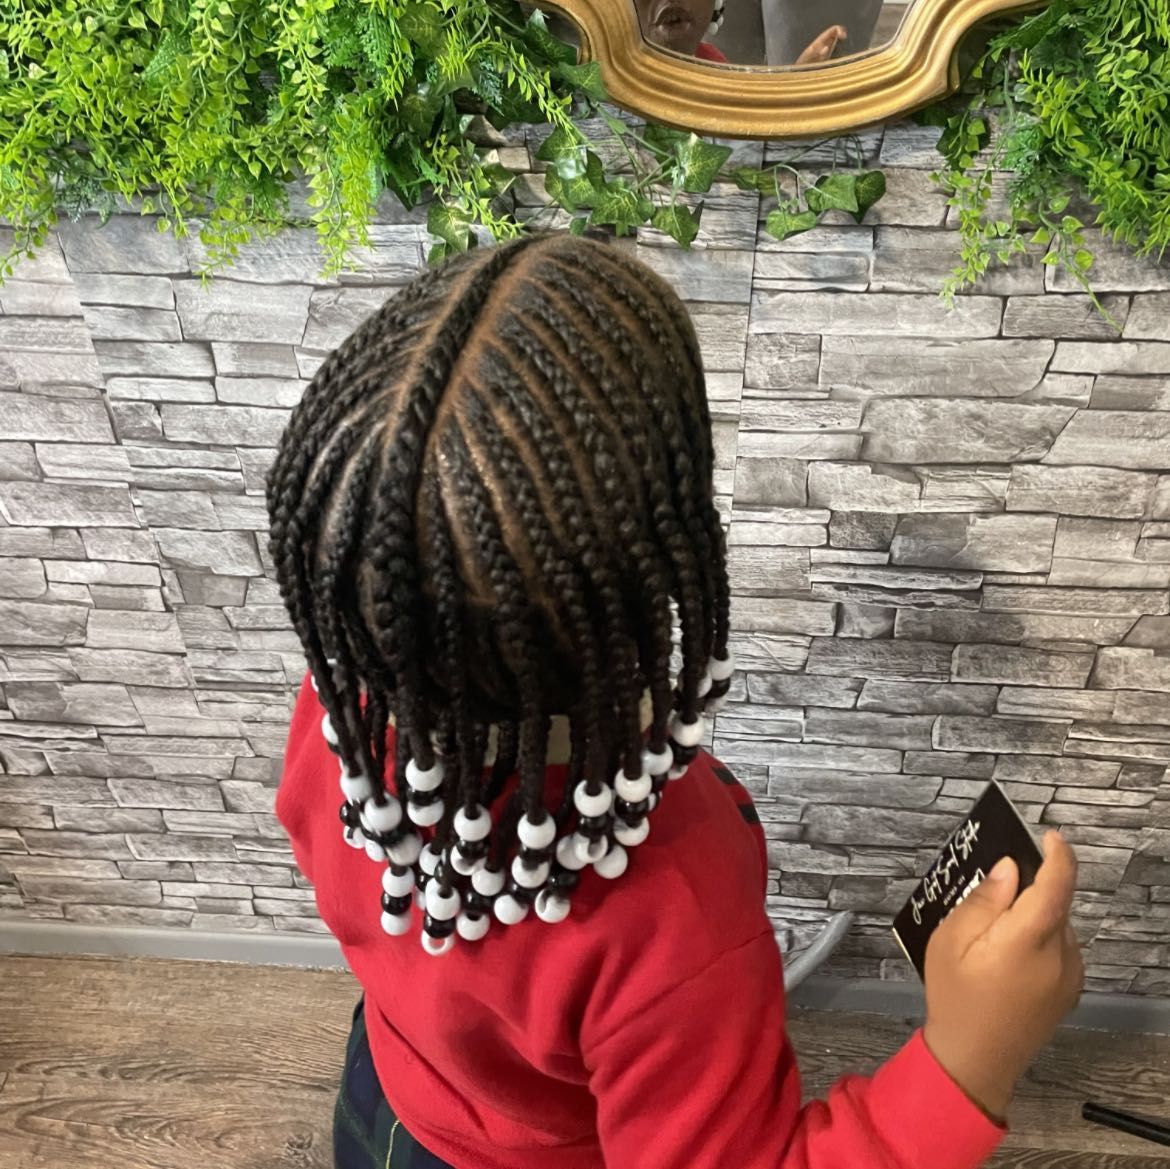 Children’s cornrows natural hair portfolio